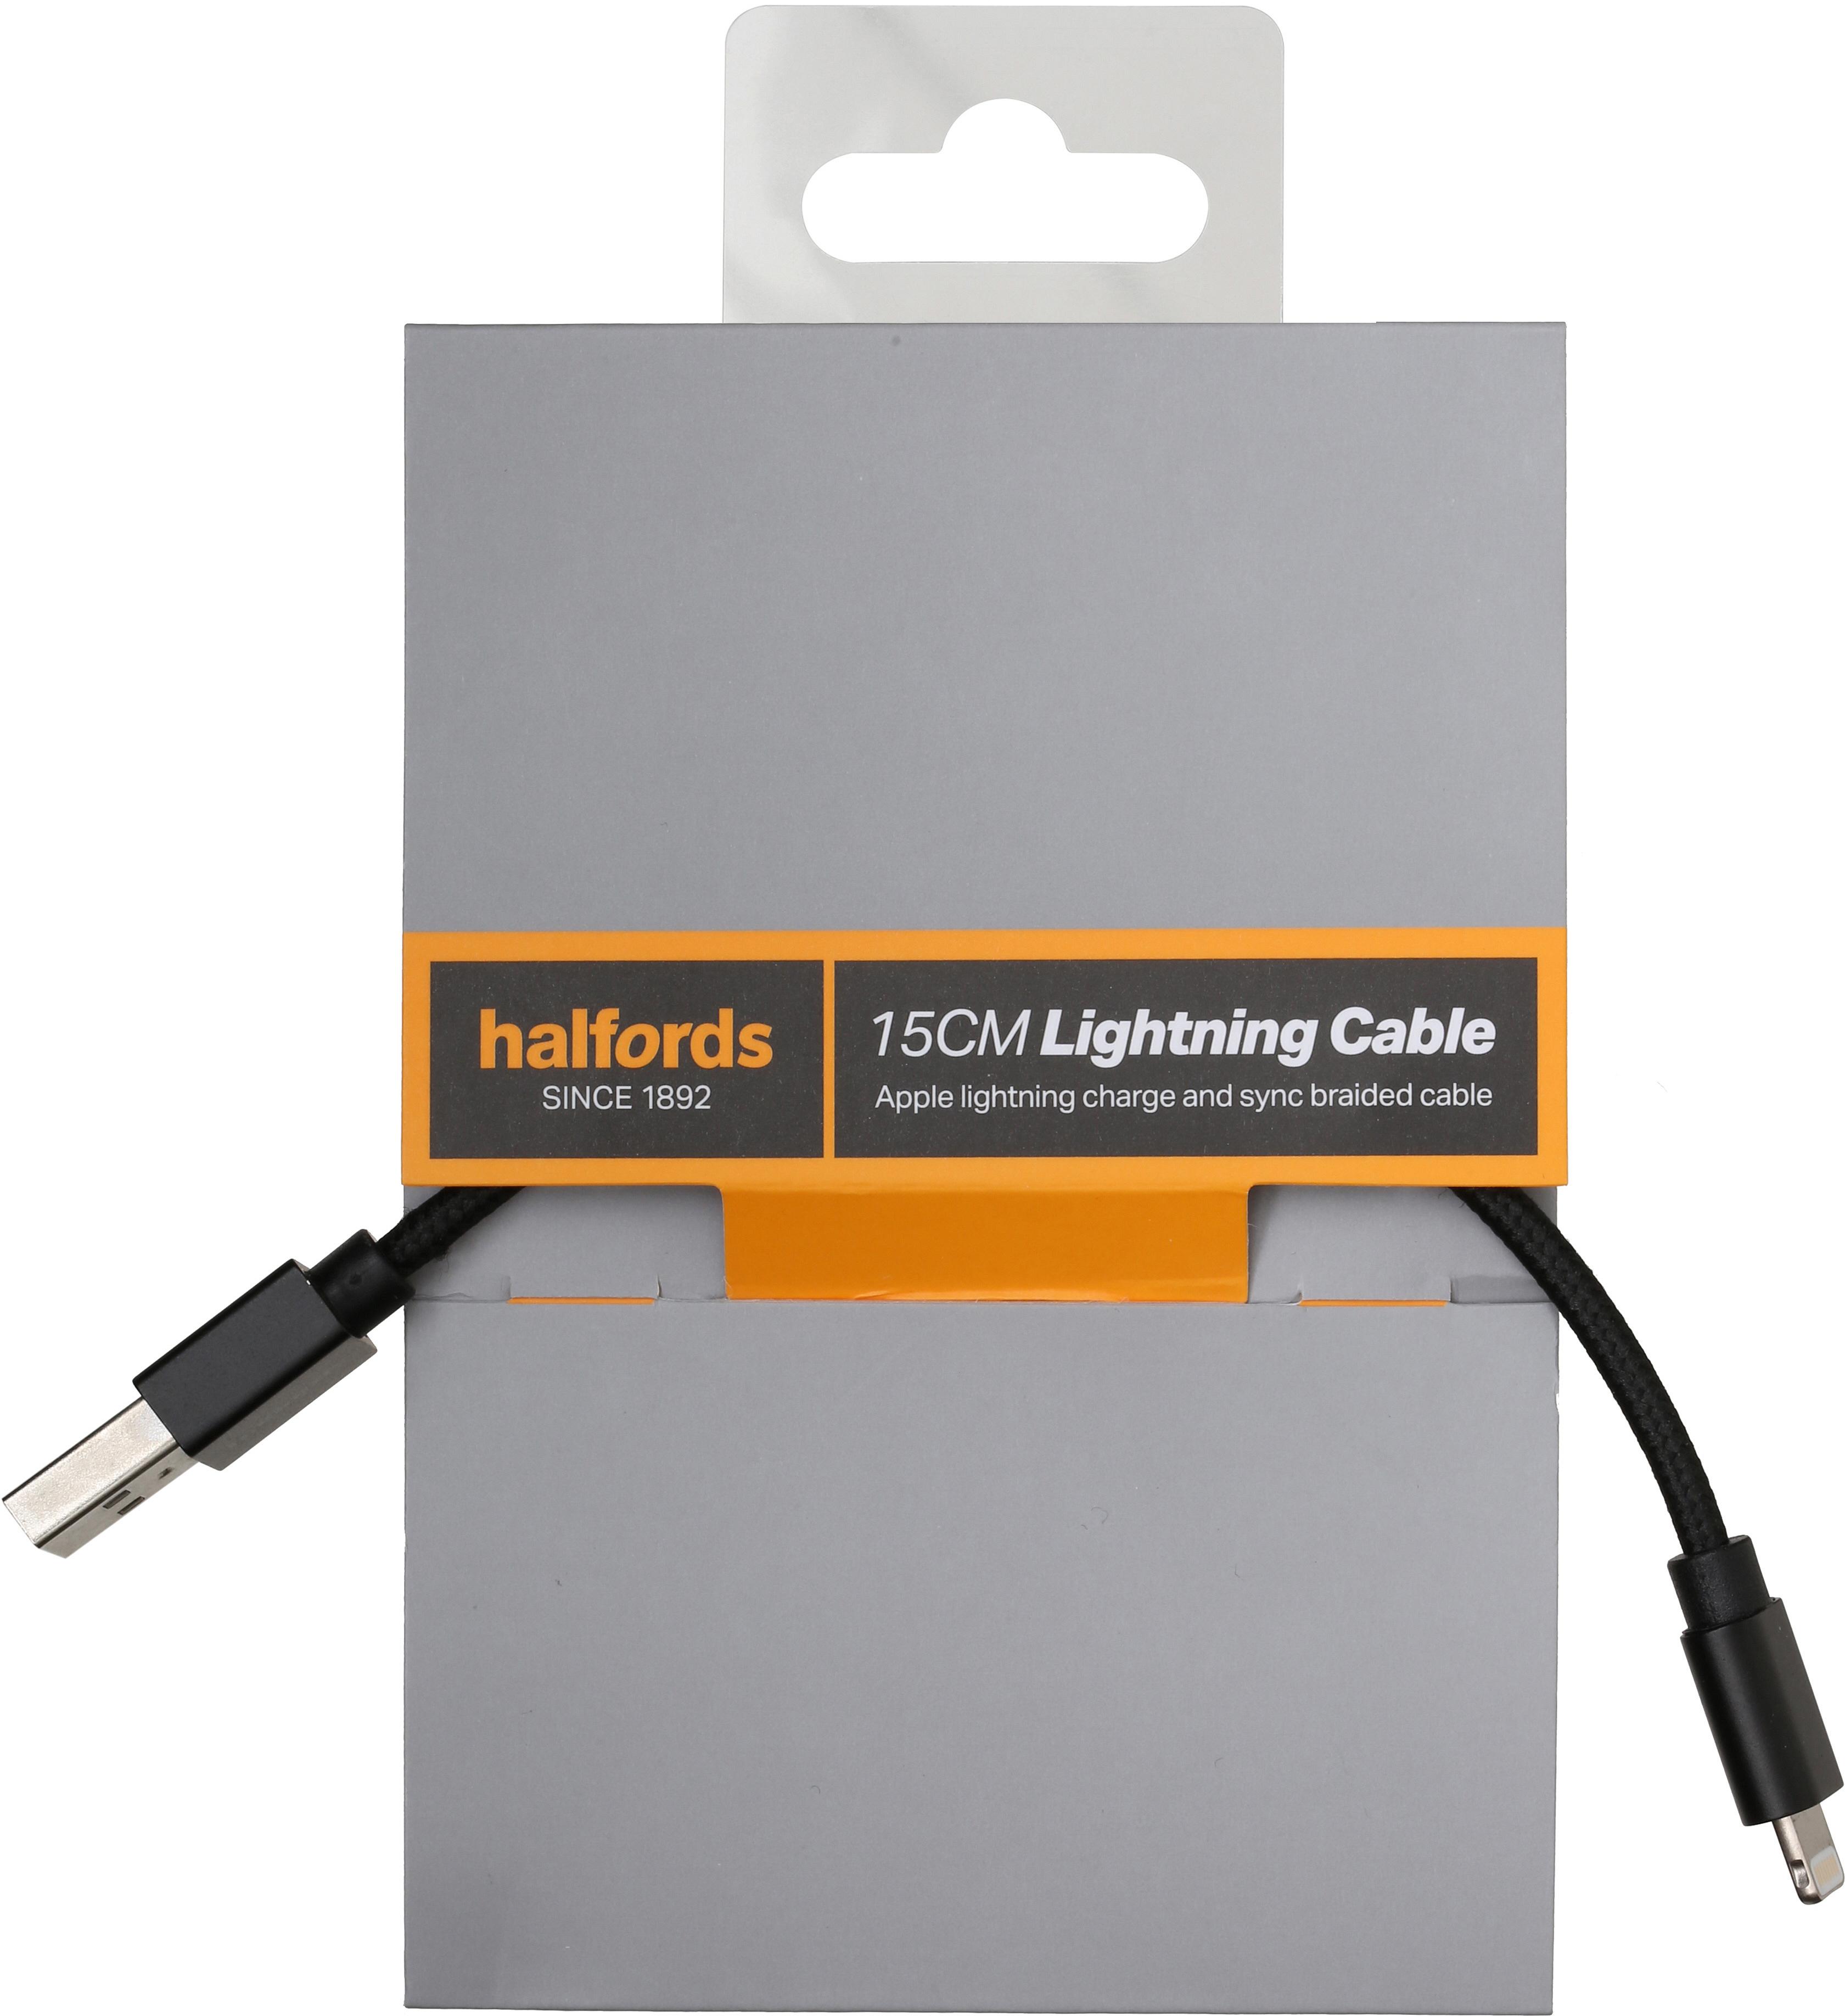 Halfords 15Cm Lightning Cable Black